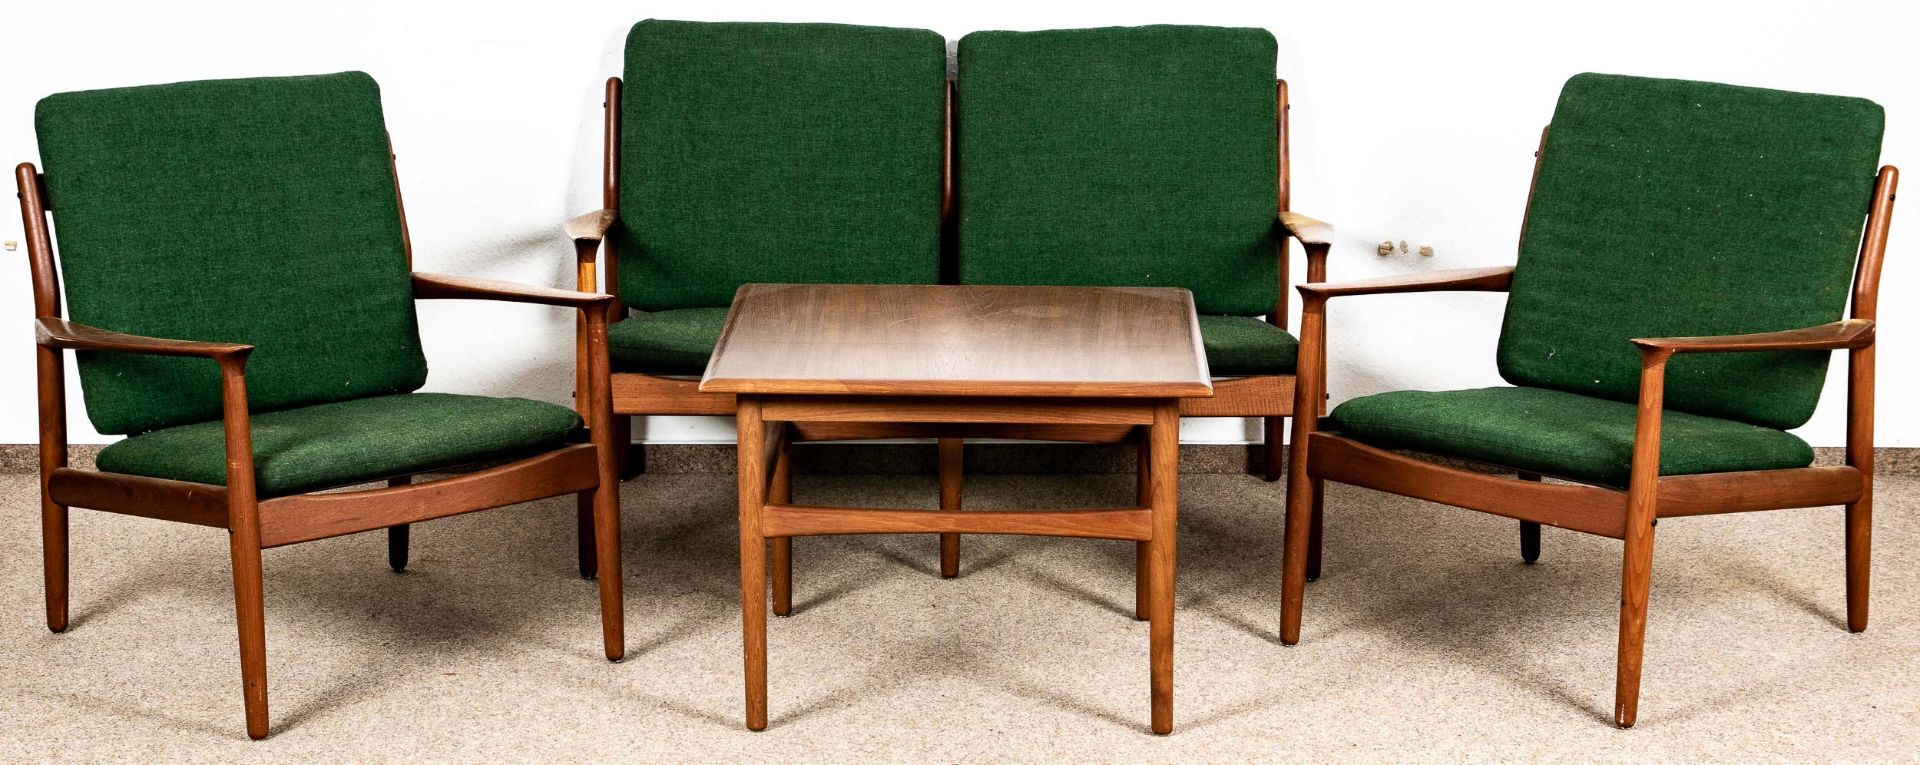 4teilige Teakholz - Sitzgarnitur, Danisch Design der 1950er/60er Jahre, bestehend aus zweisitziger